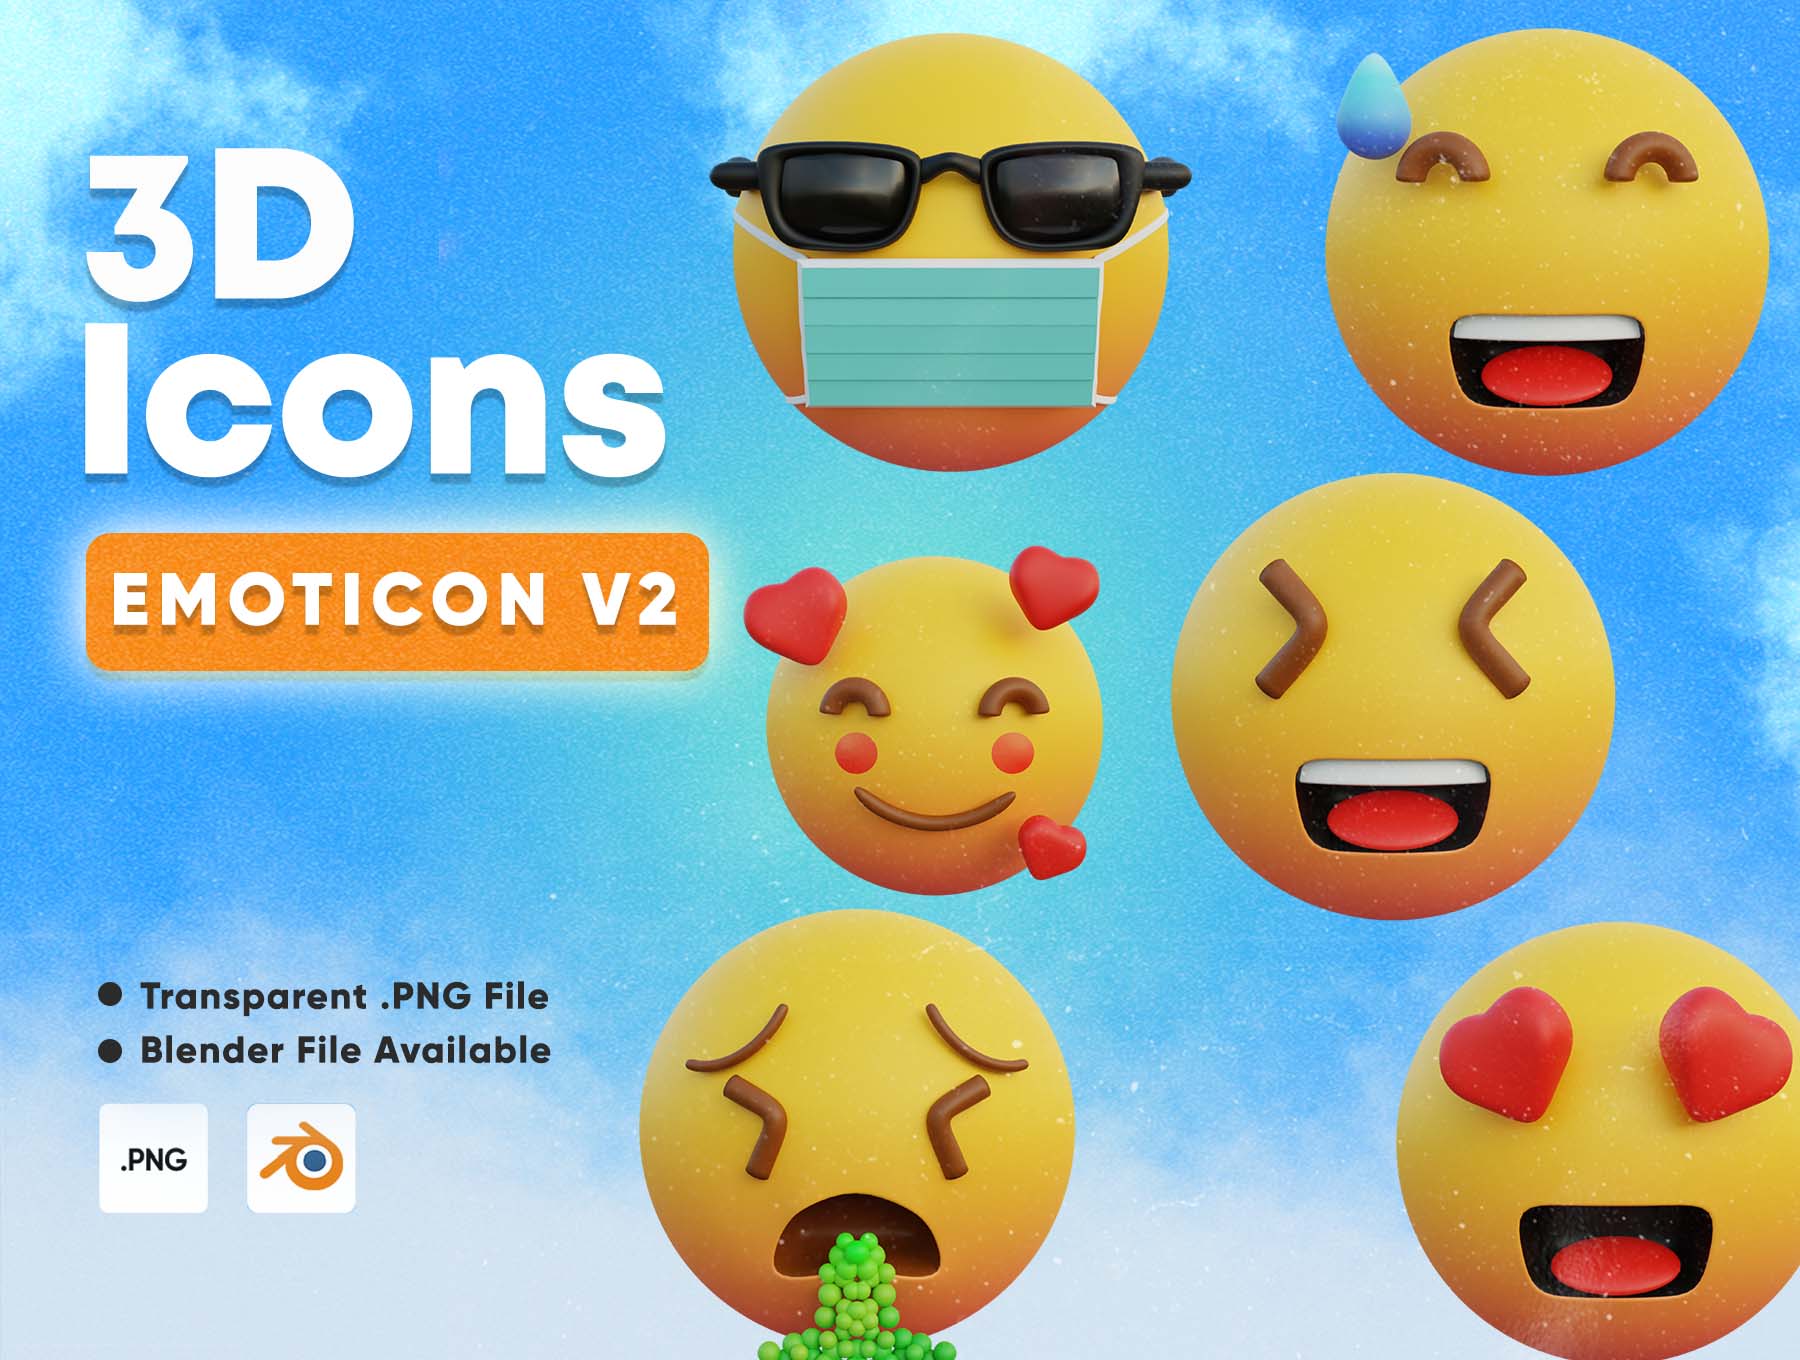 Premium Emoji 3D Illustration Pack From Sign Symbols 3D, 41% OFF